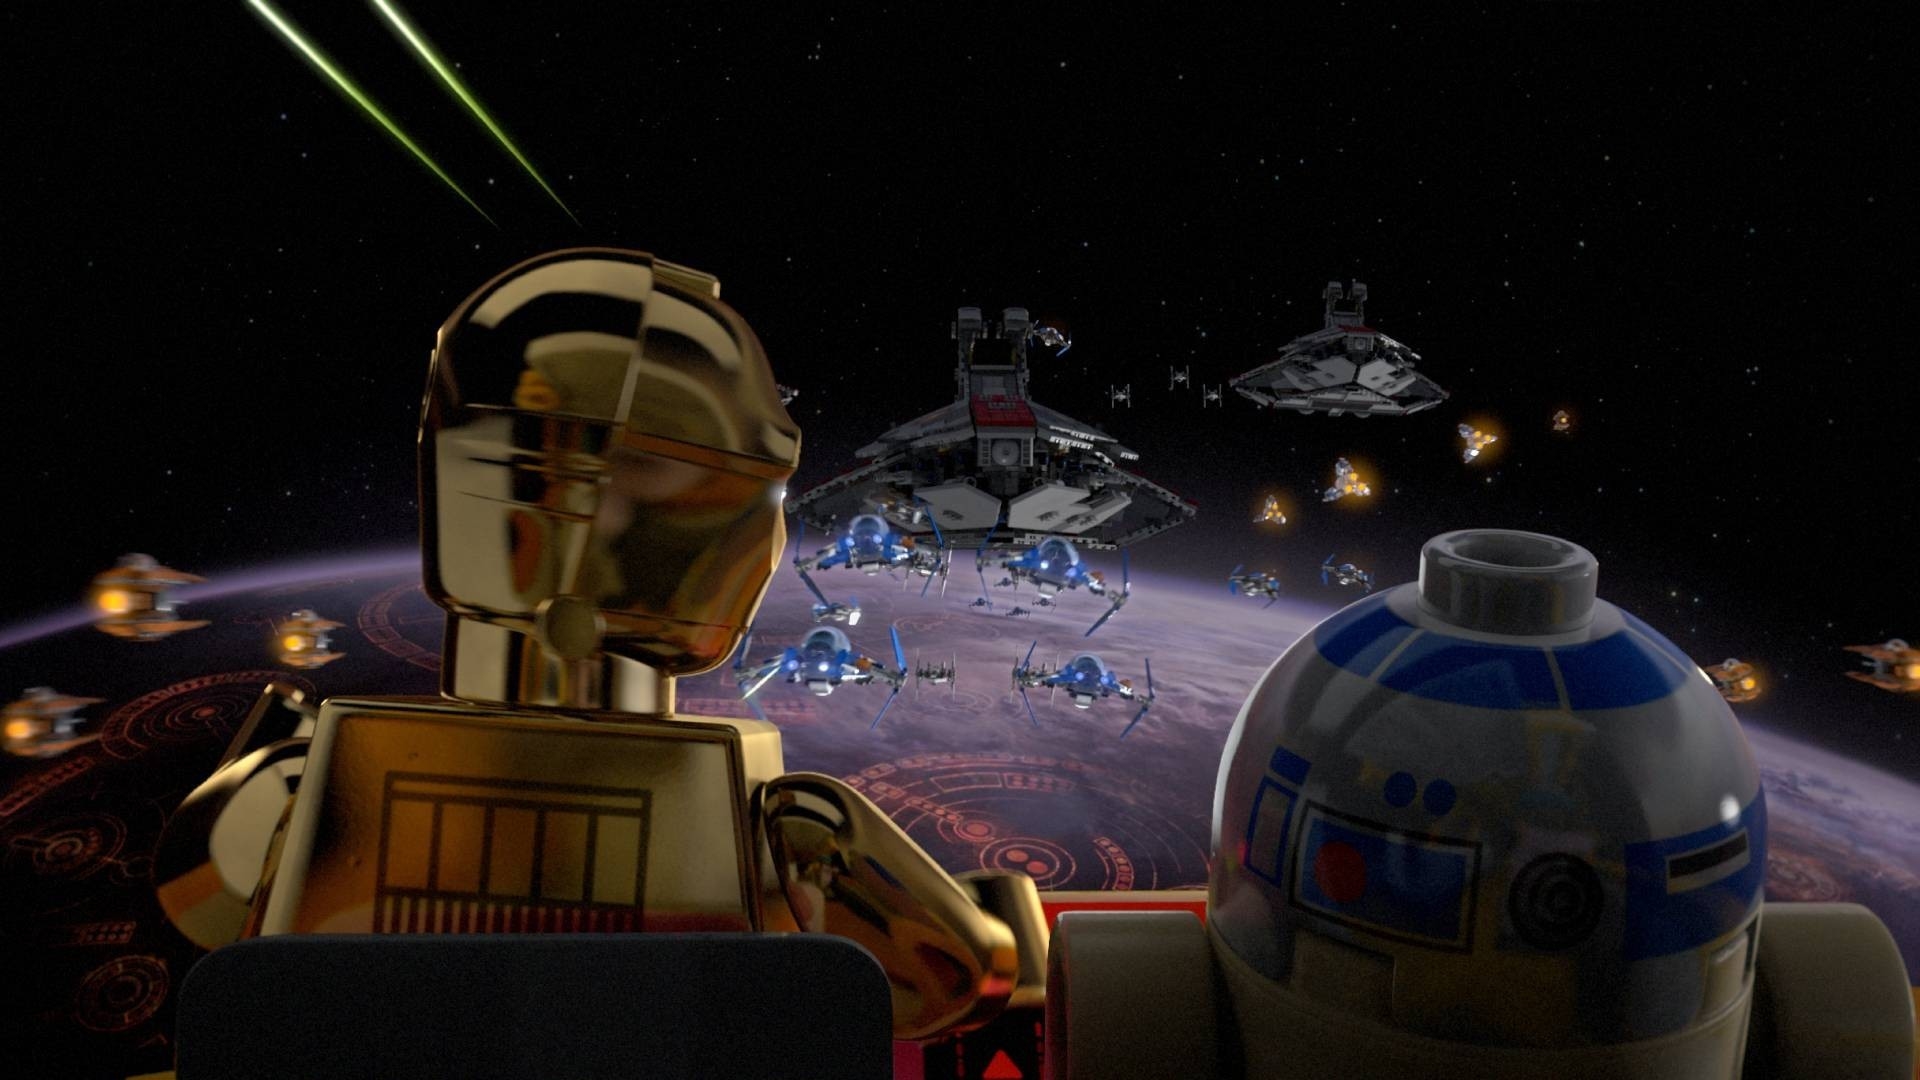 Descargar fondos de escritorio de Lego Star Wars: The Padawan Menace HD